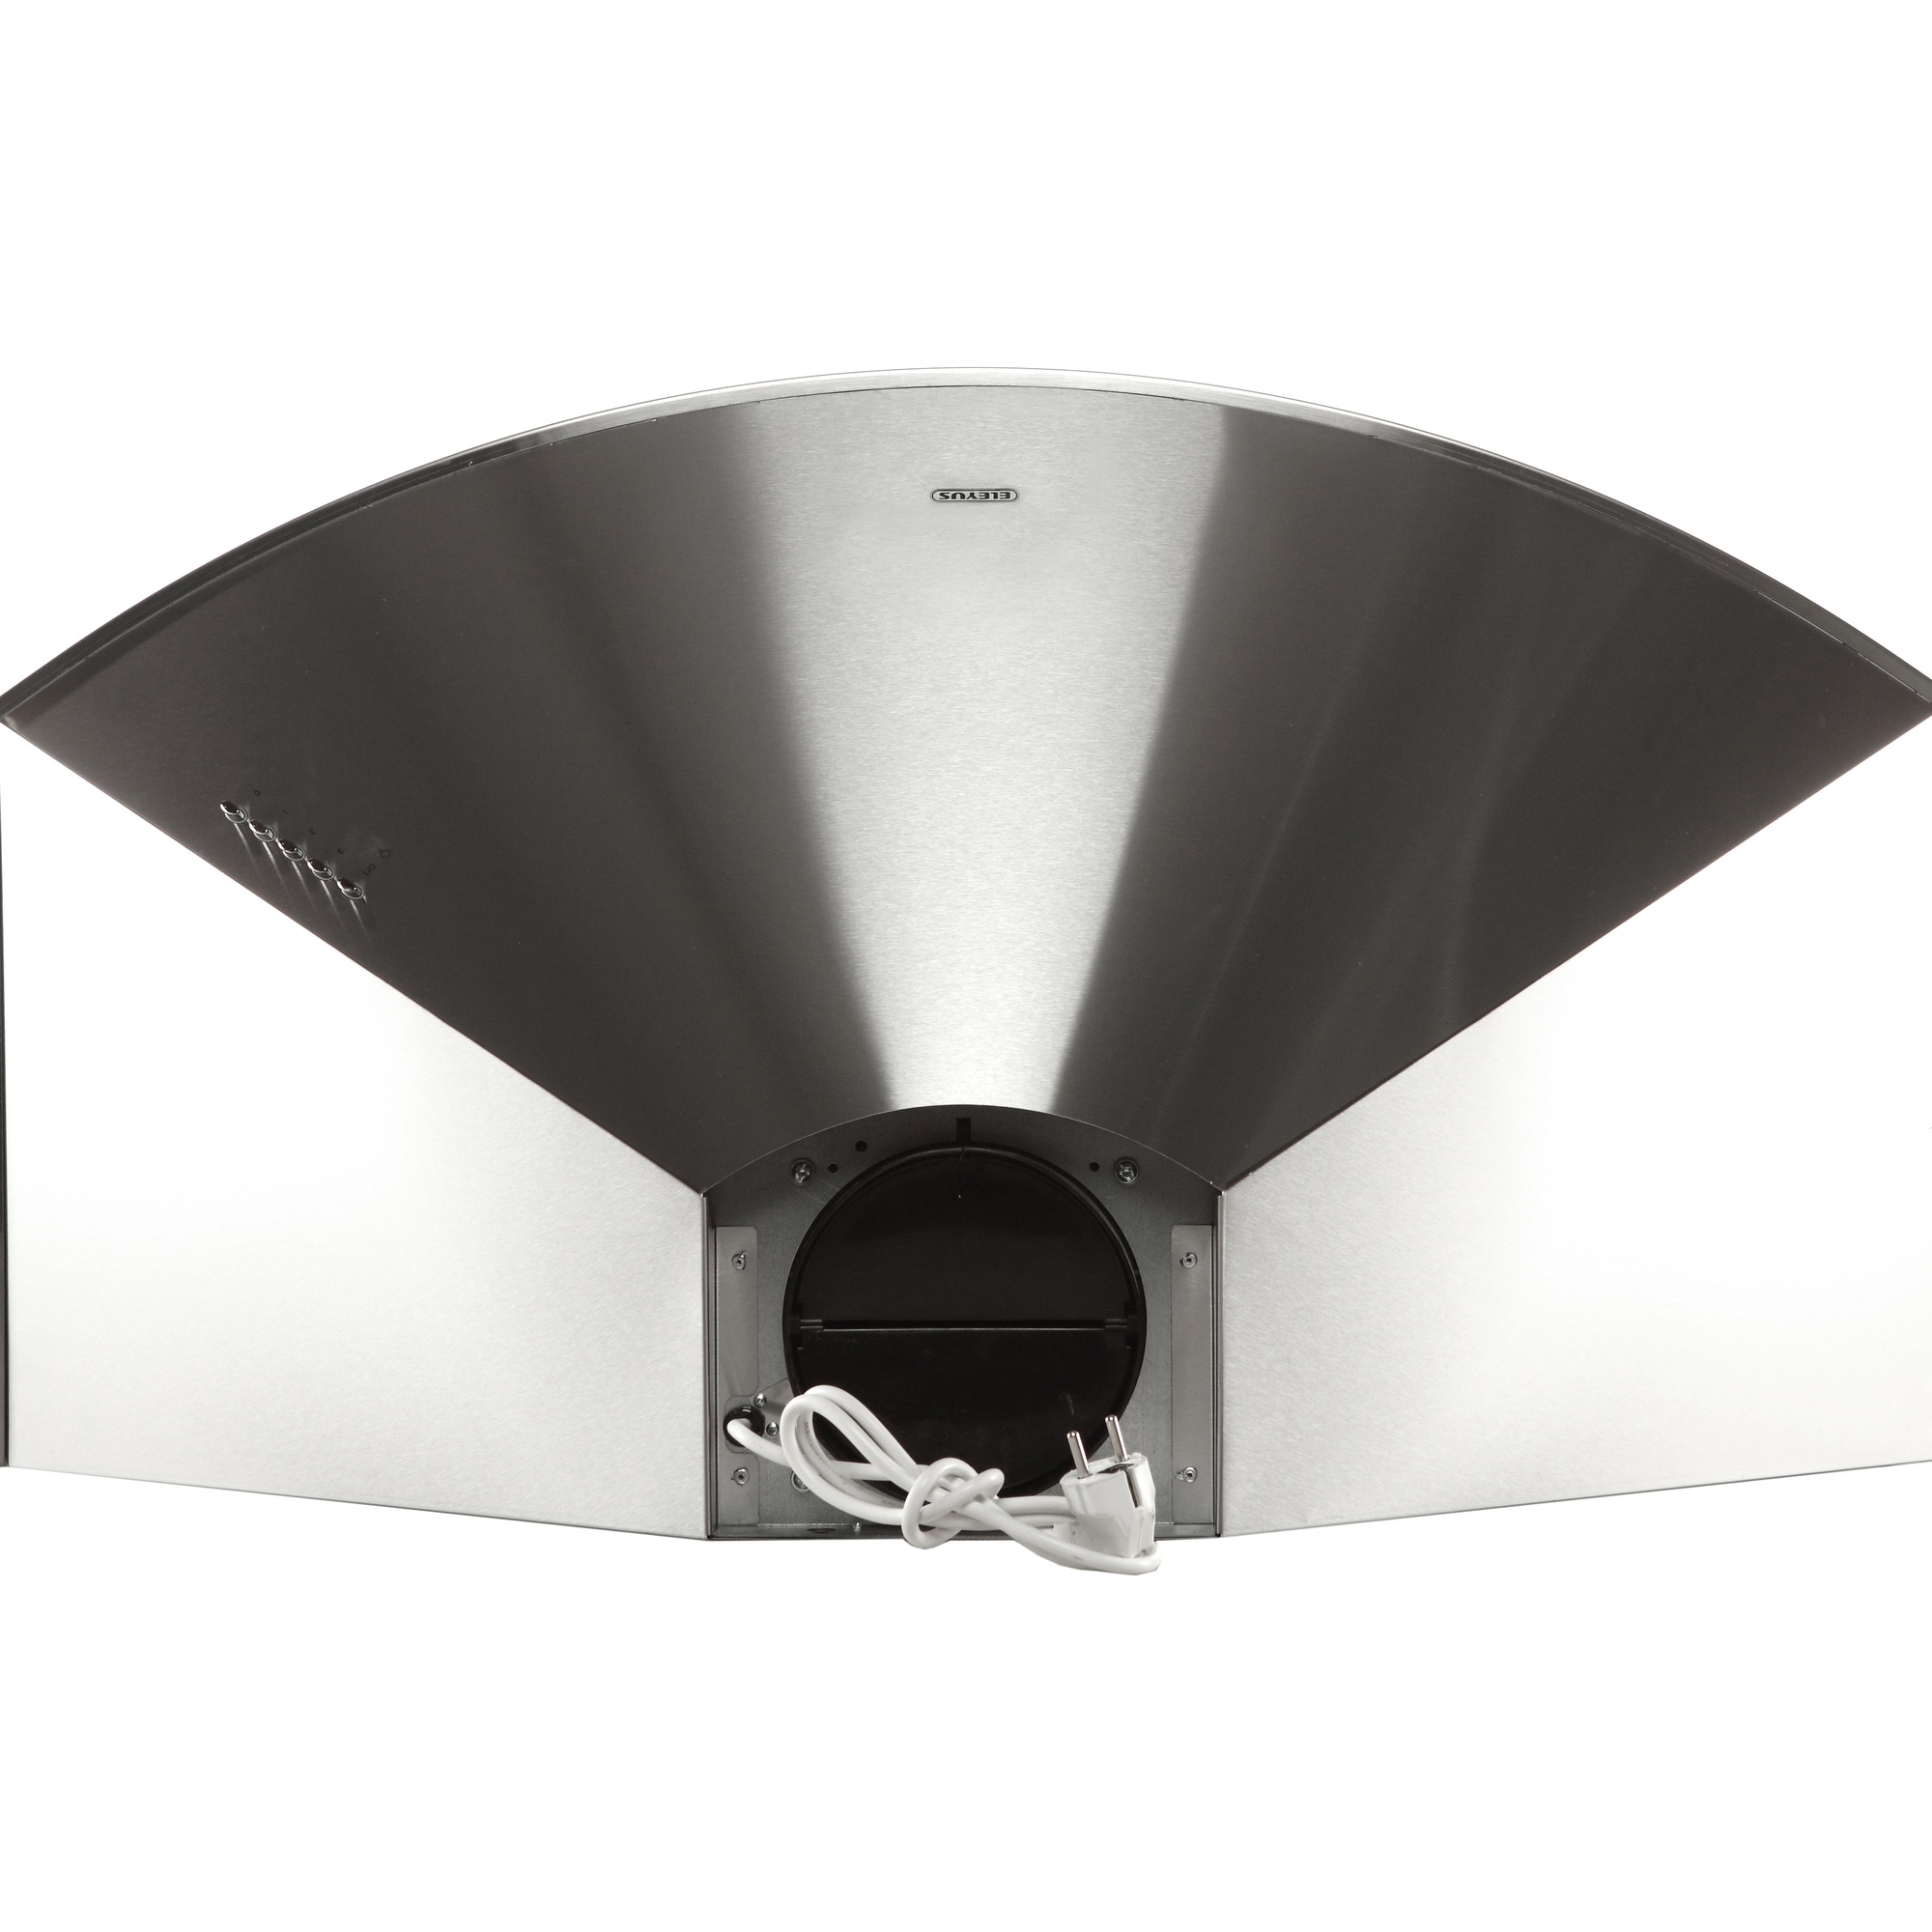 Кухонная вытяжка Eleyus Bora 1200 LED SMD 90 IS отзывы - изображения 5